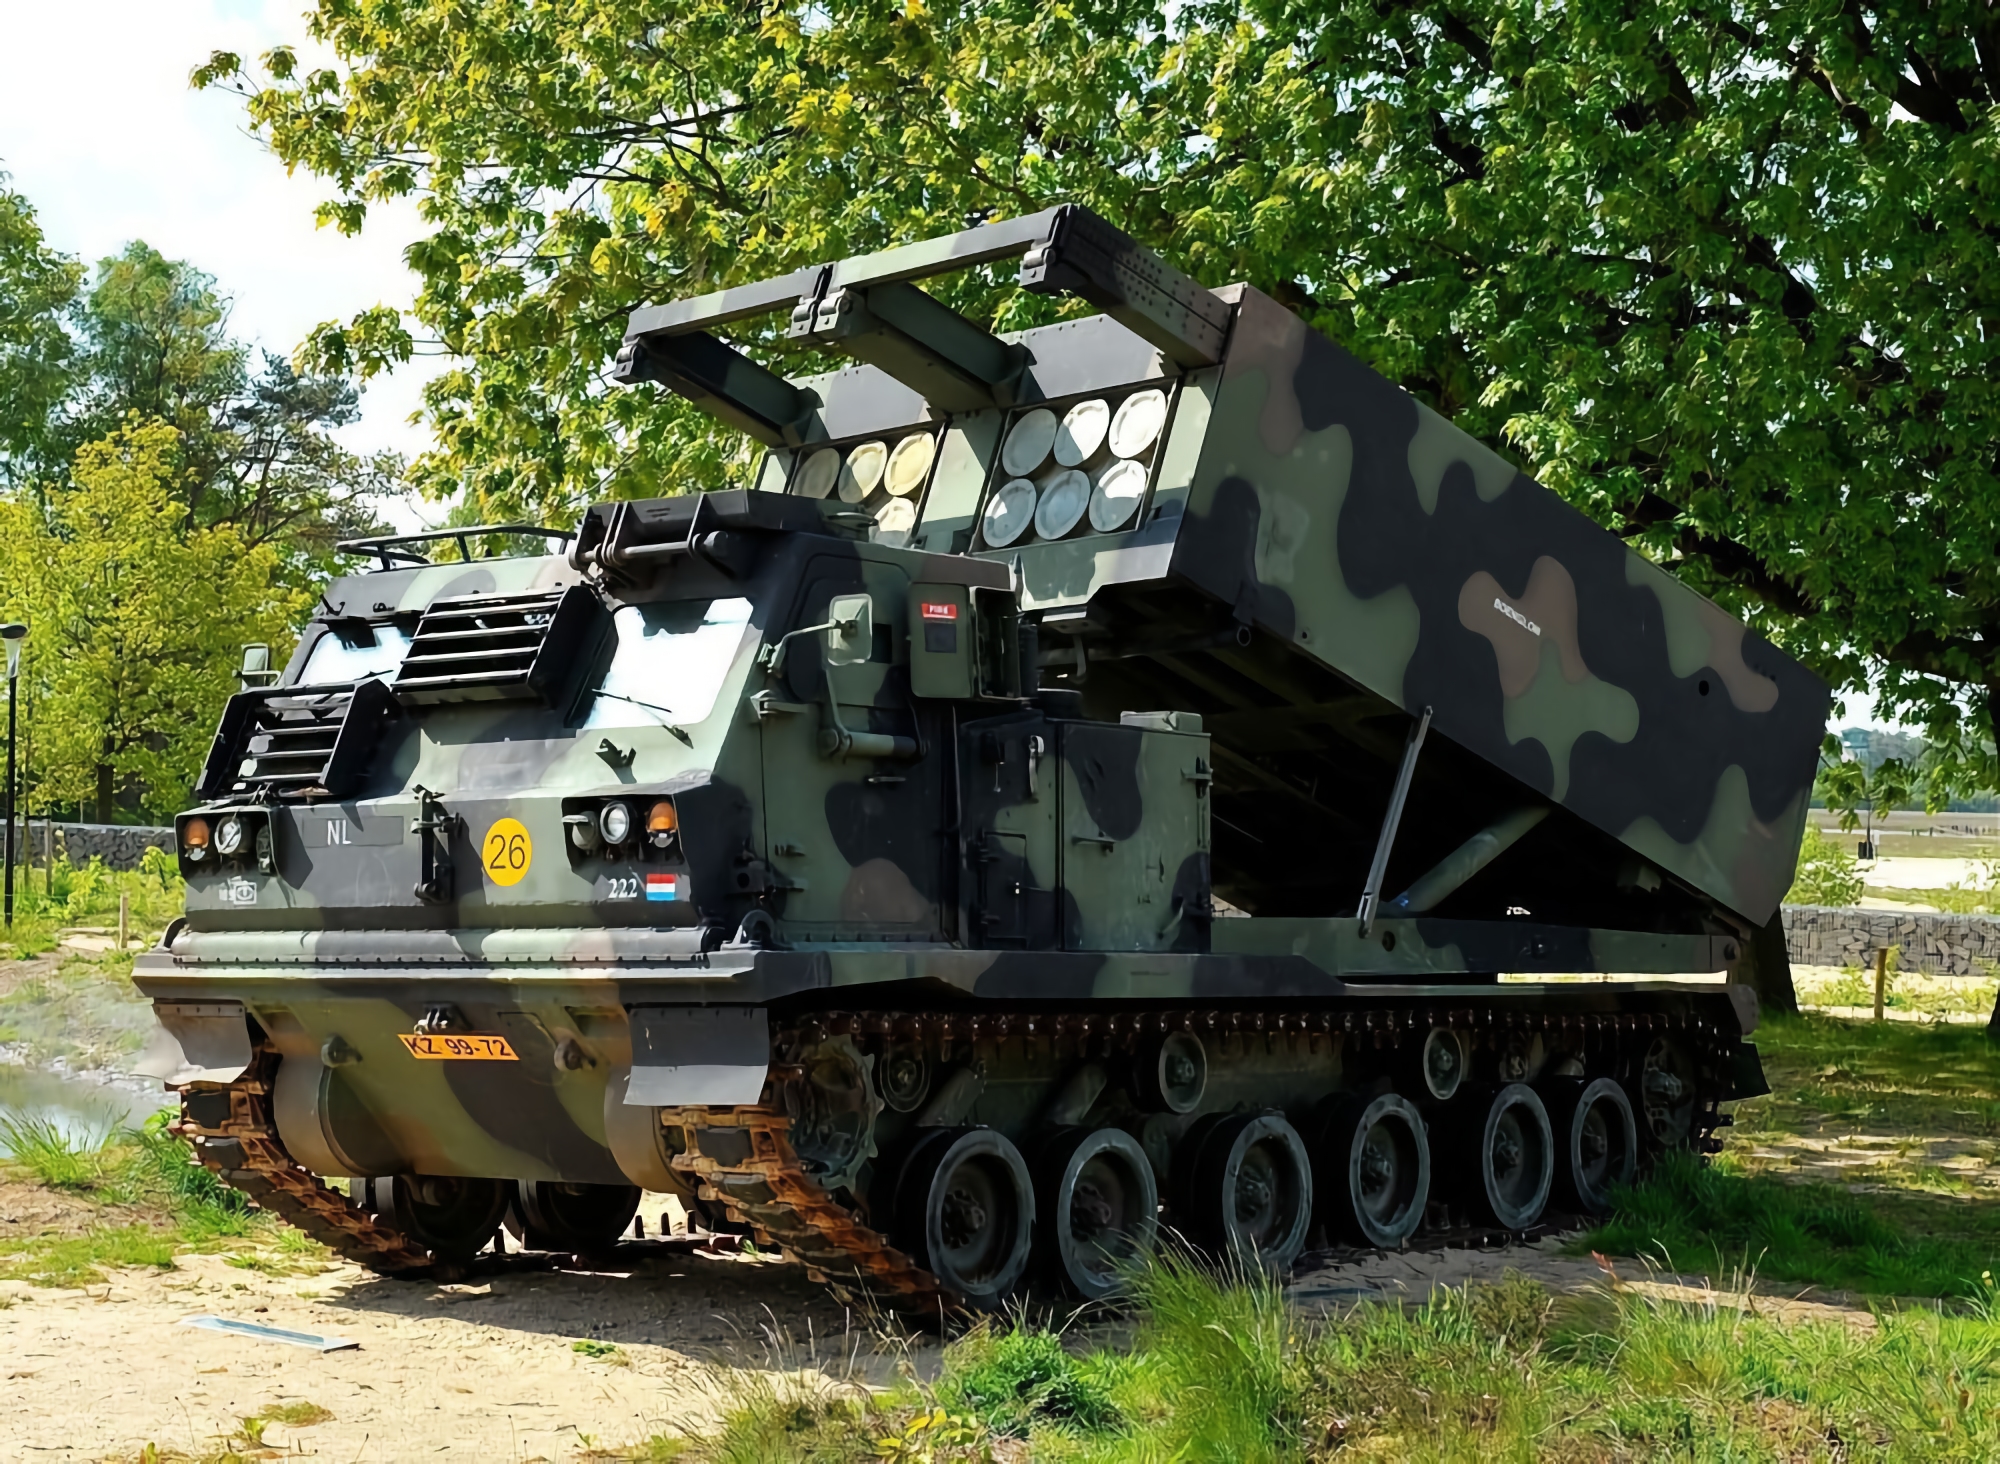 Frankreich liefert drei LRU-Mehrfachraketen an die Ukraine - eine modifizierte Version der M270